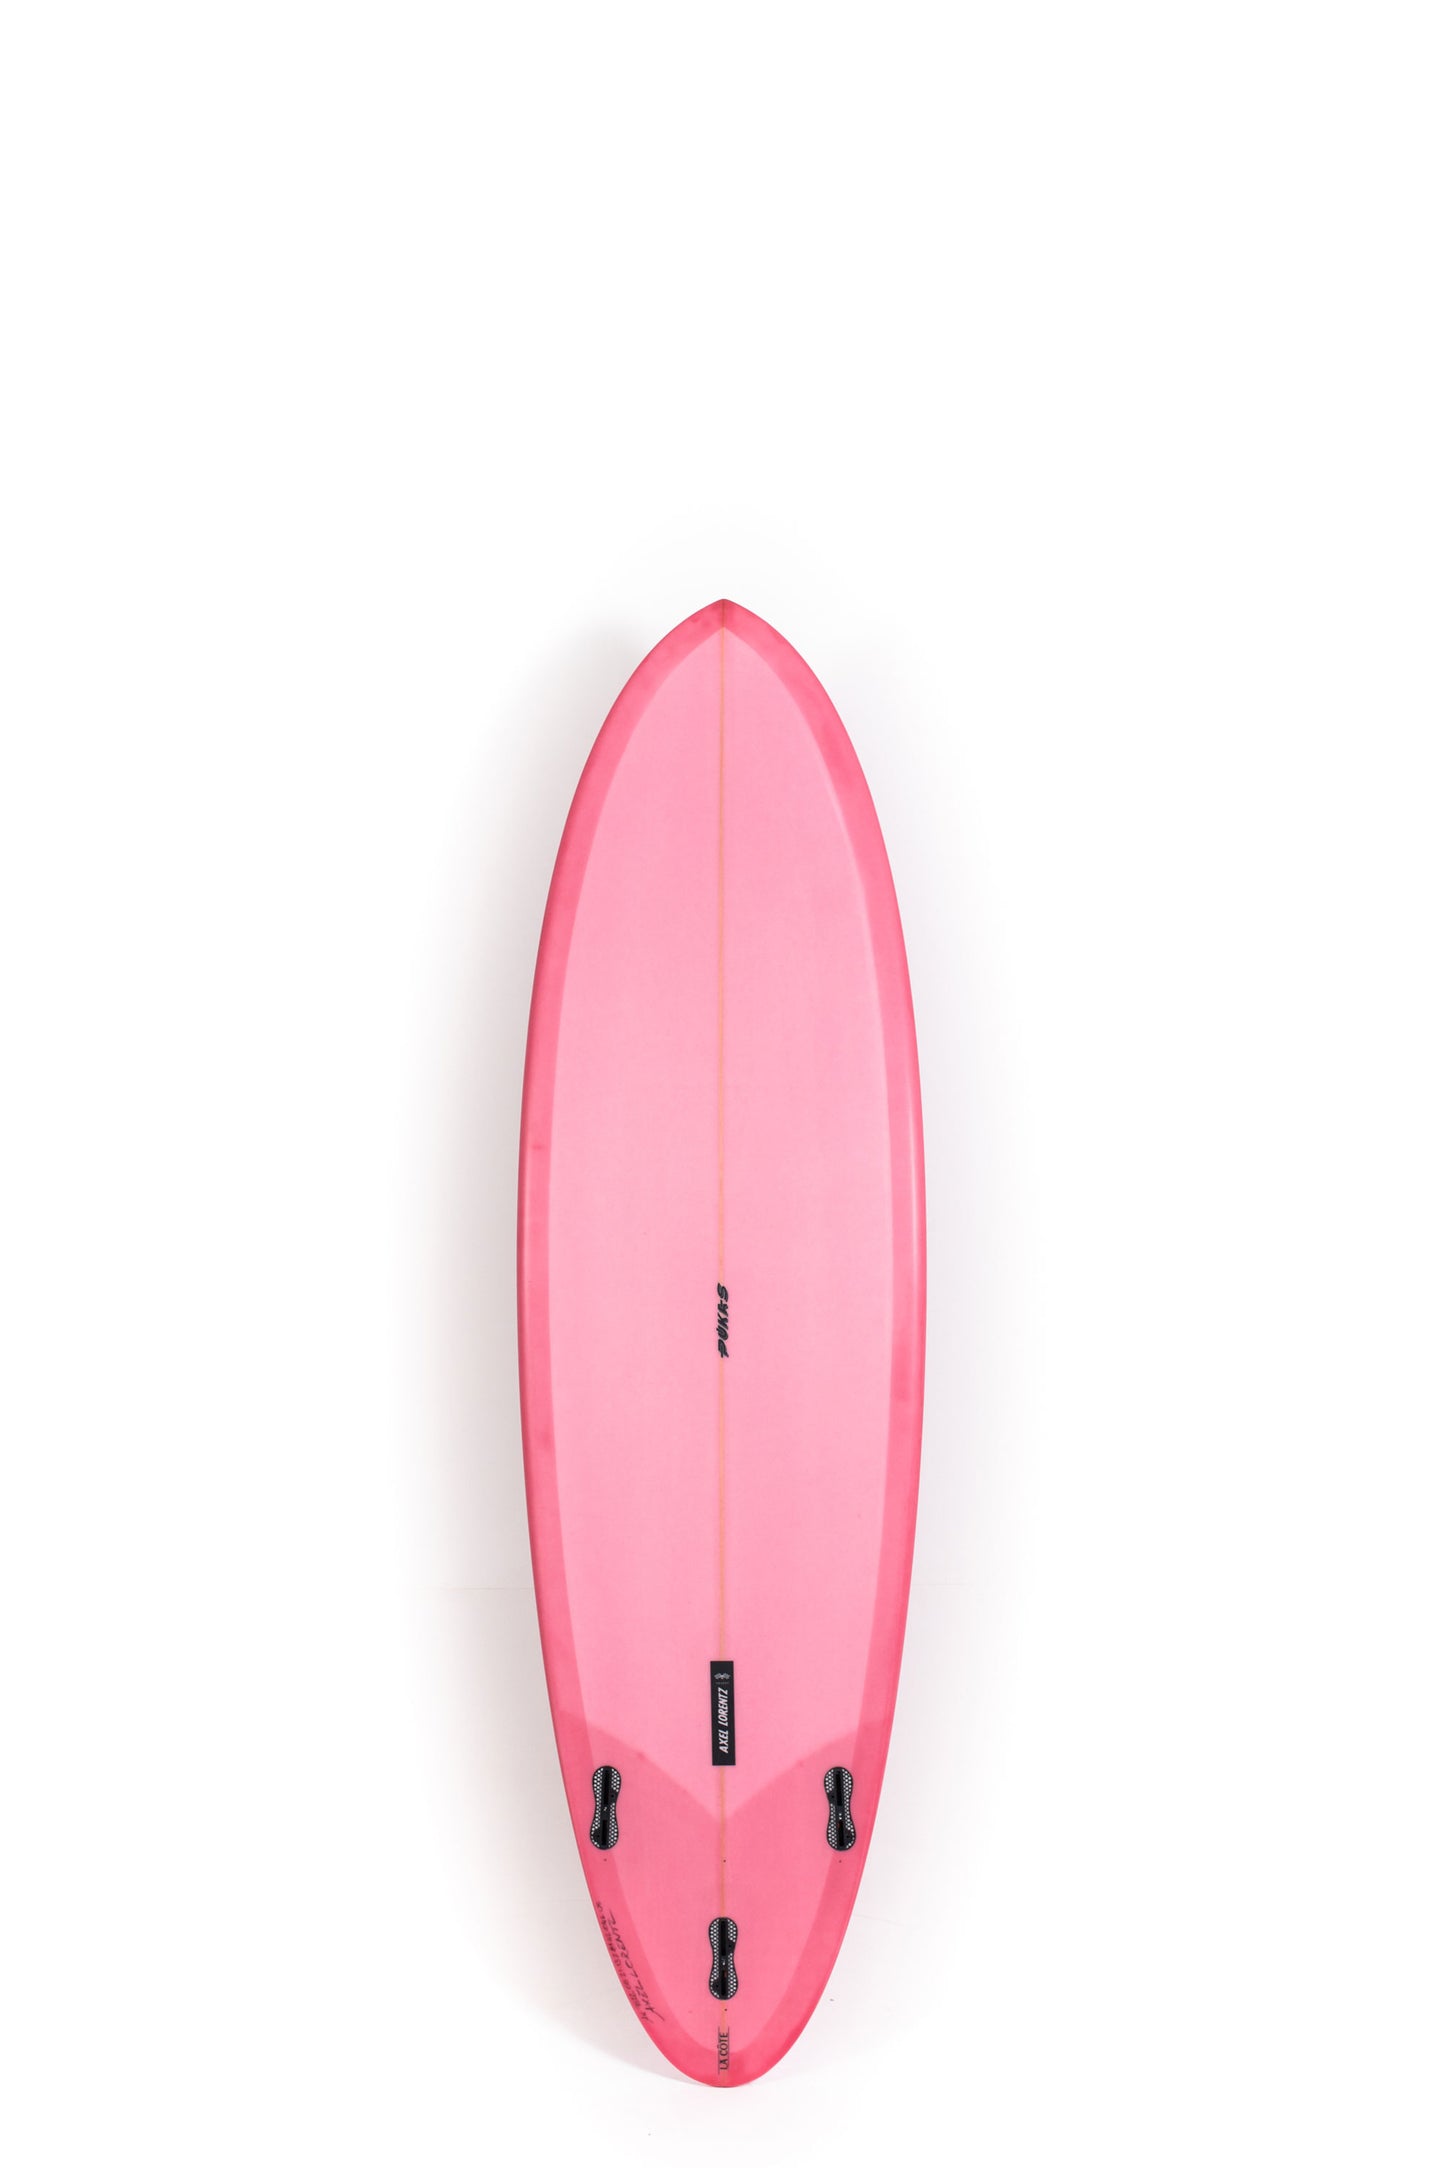 Pukas Surf Shop - Pukas Surfboard - LA CÔTE by Axel Lorentz - 6'6" x 21,13 x 2,81 - 42,04L -  AX09622